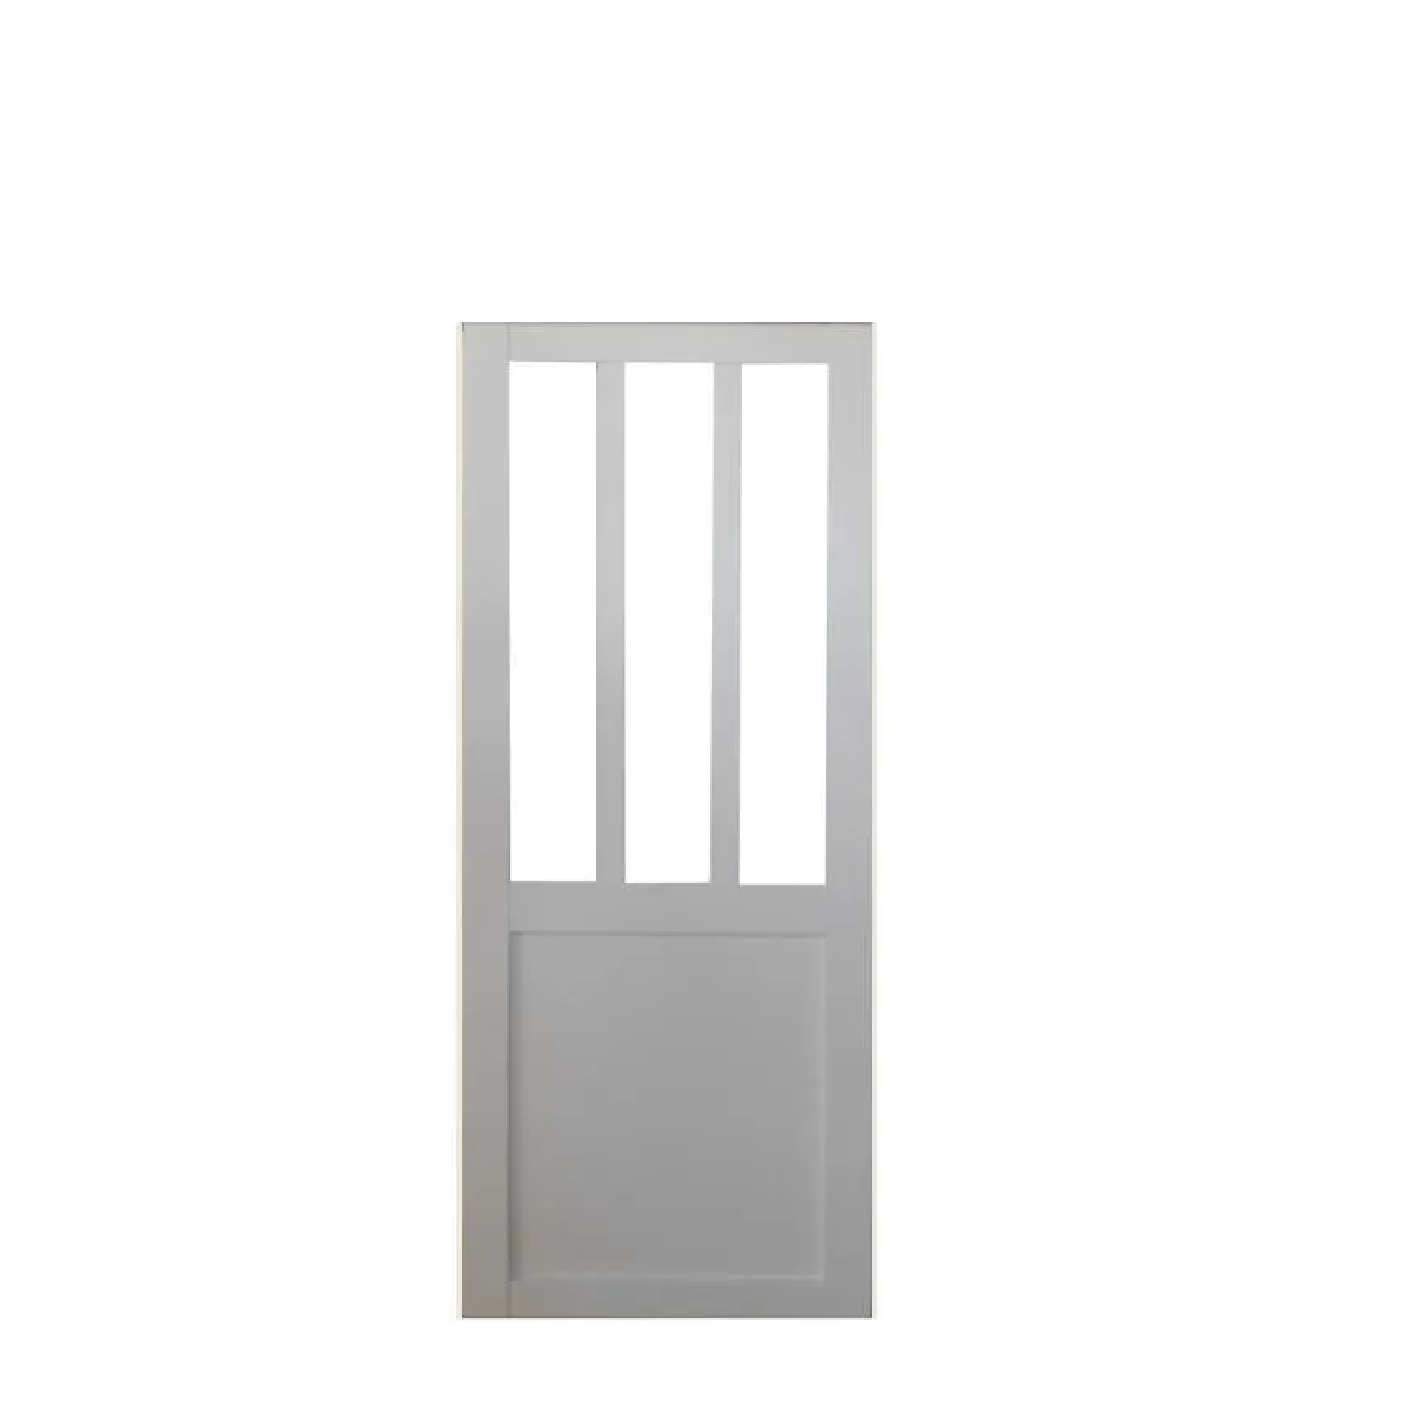 Porte Coulissante Atelier Blanc H204 X L93 Gd Menuiseries 0